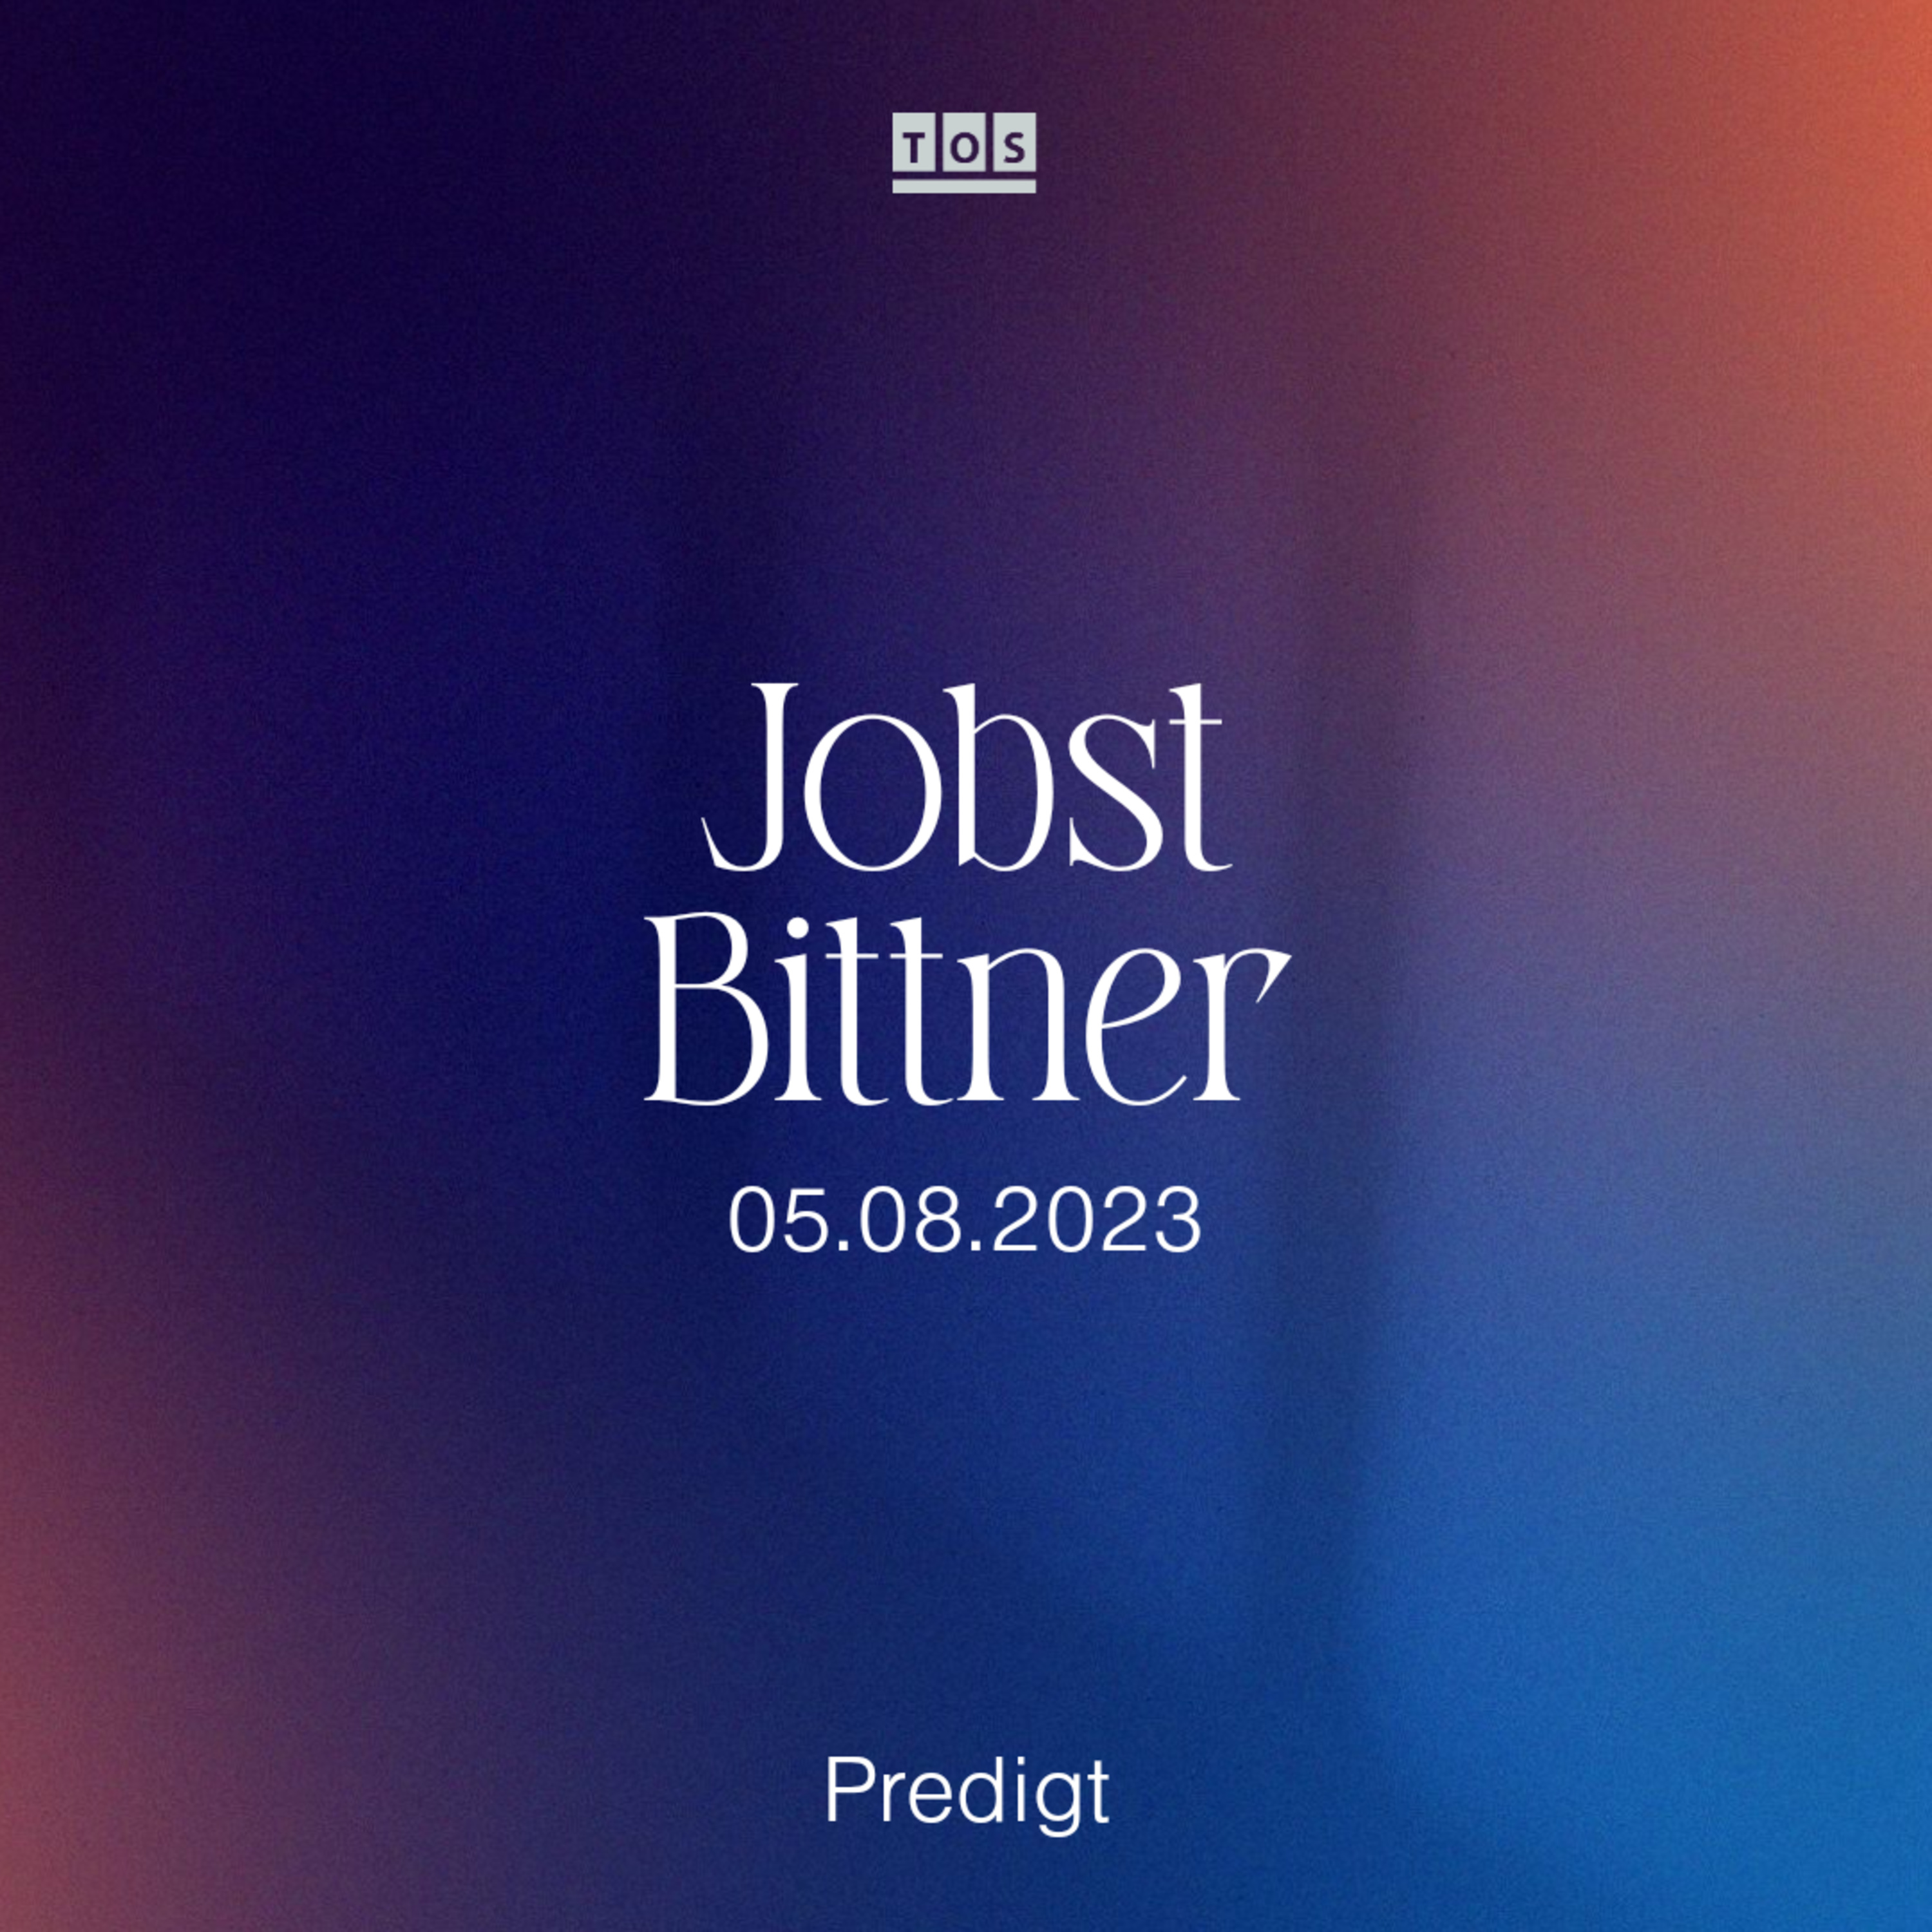 Jobst Bittner - 05.08.2023 hero artwork